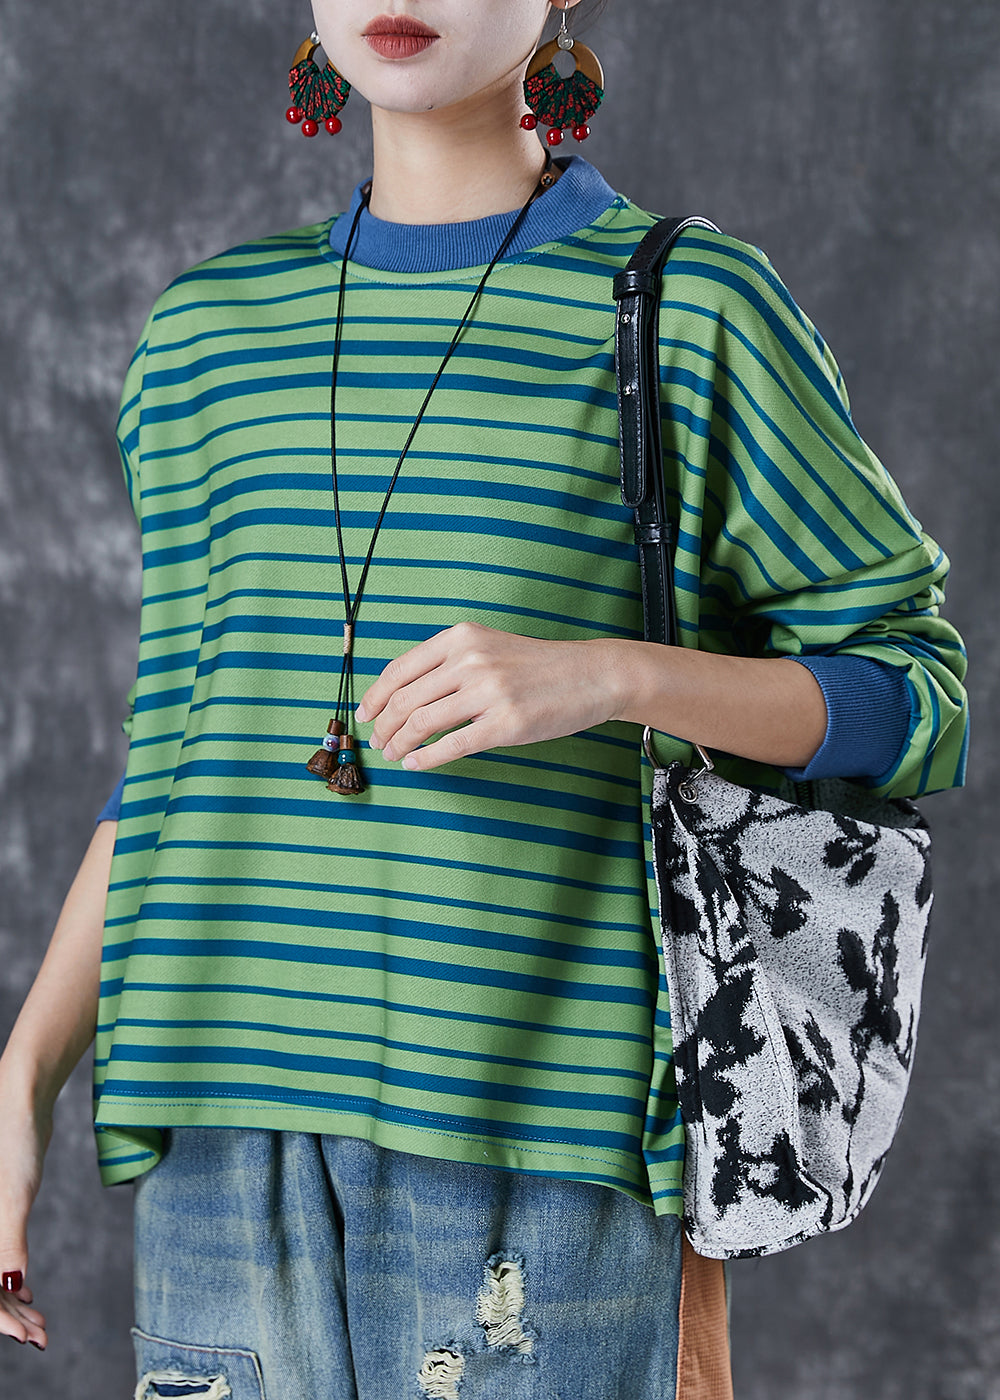 Style Green Oversized Striped Cotton Sweatshirt Streetwear Spring